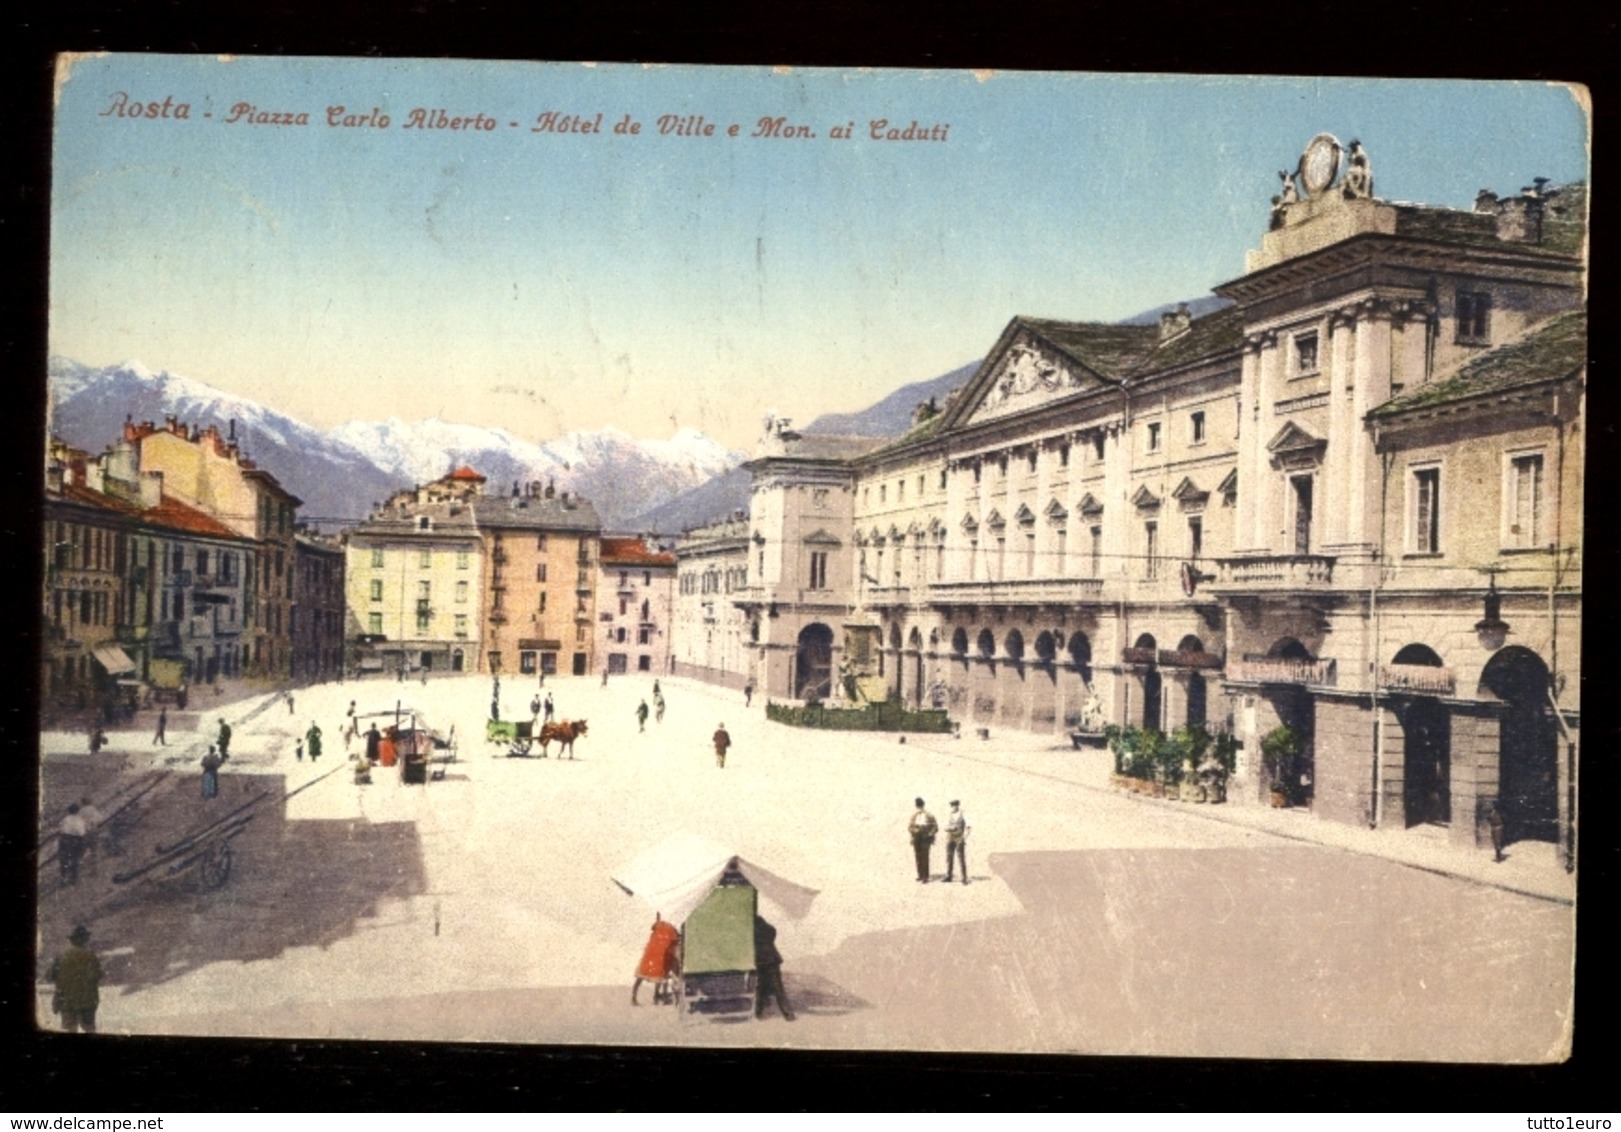 AOSTA - 1927 - PIAZZA CARLO ALBERTO - ANIMATISSIMA. ACQUERELLATA - Aosta